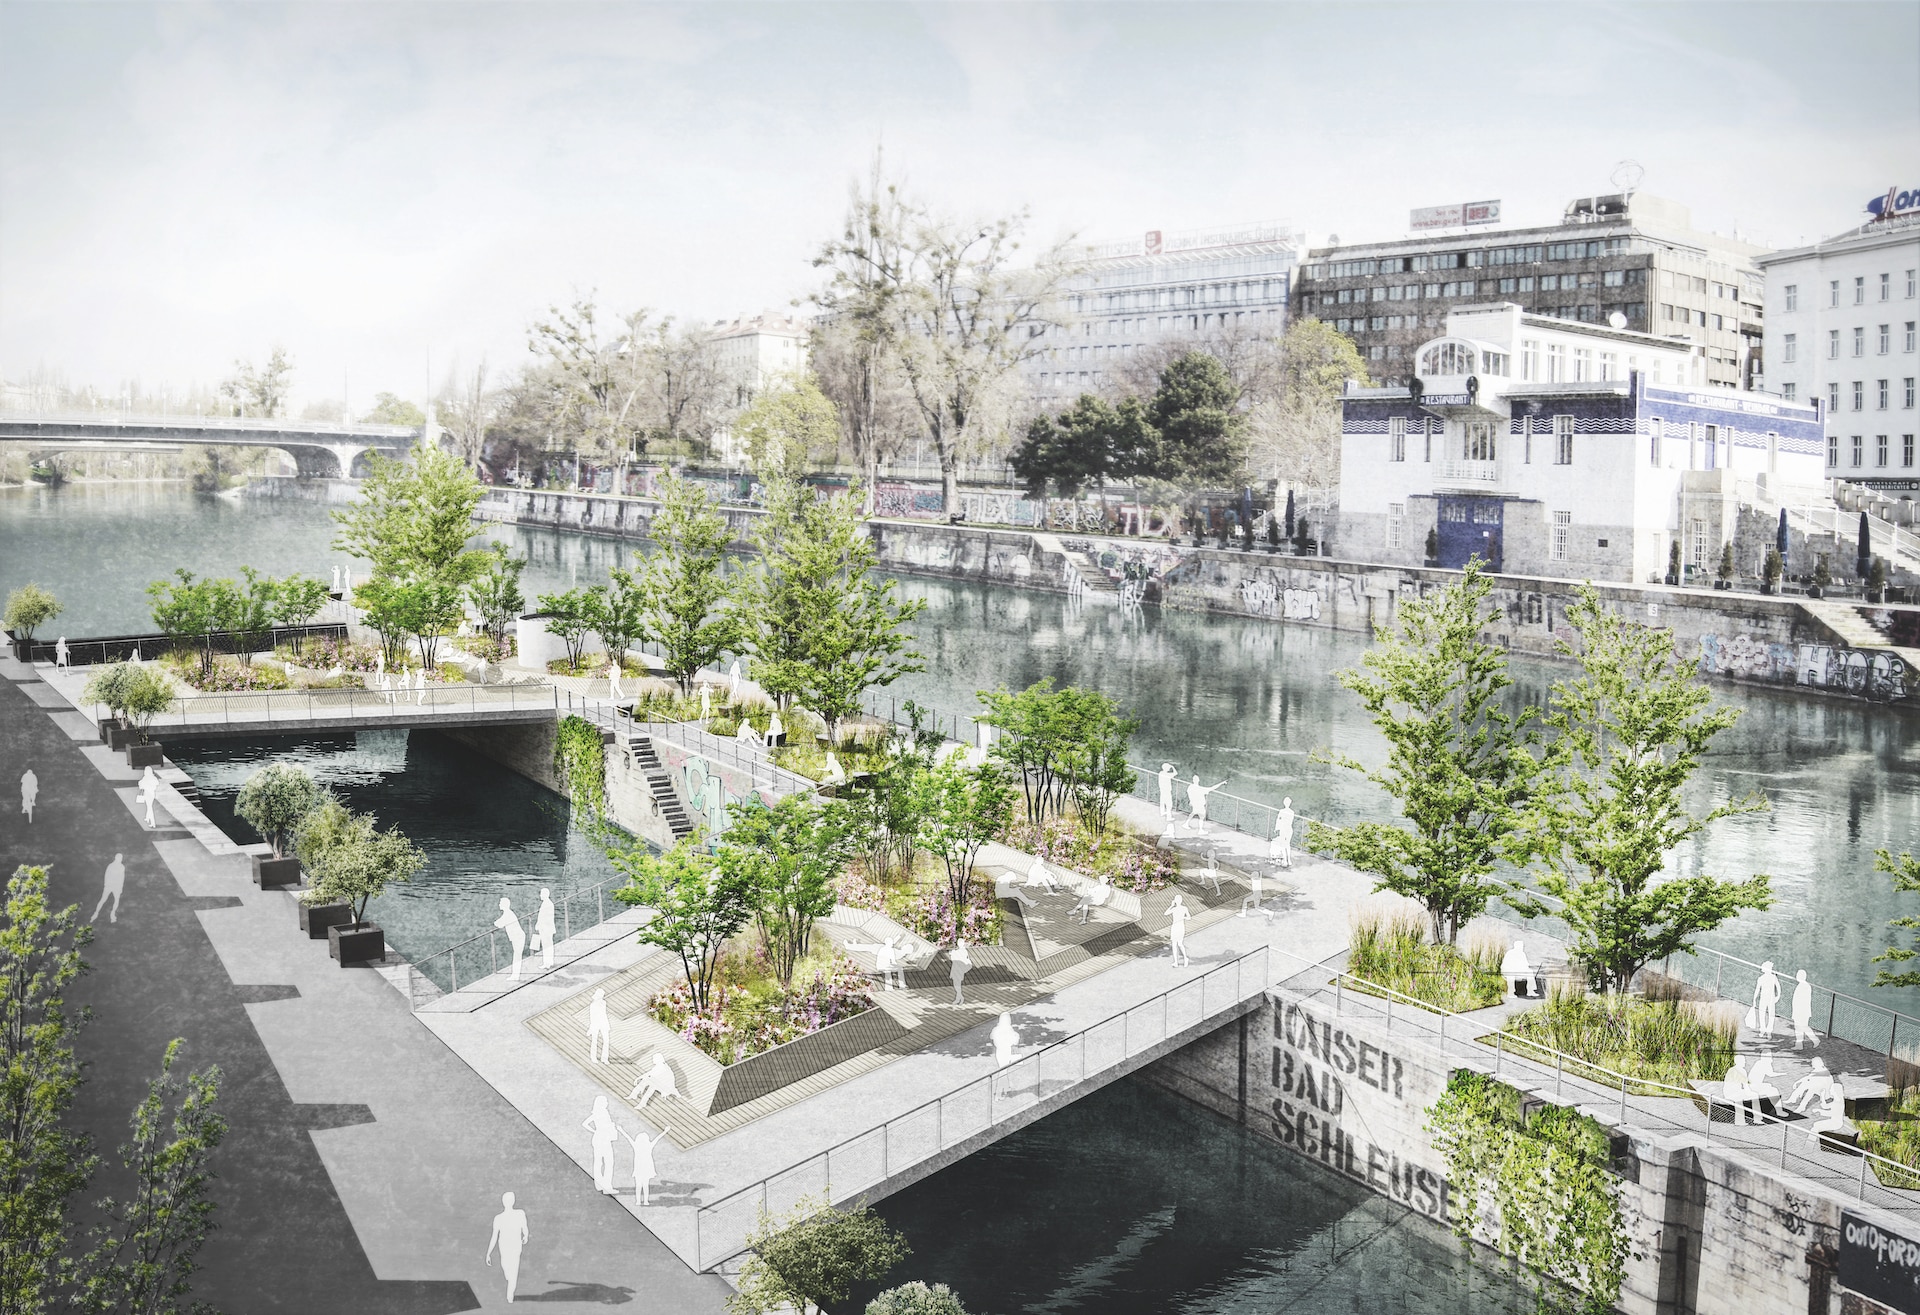 Die Visualisierungen für die schwimmenden Gärten in Wien erstellte Carla Lo für den Wahlkampf 2015. Fünf Jahre später wurde das Projekt dann tatsächlich auch umgesetzt. Visualisierung: Carla Lo